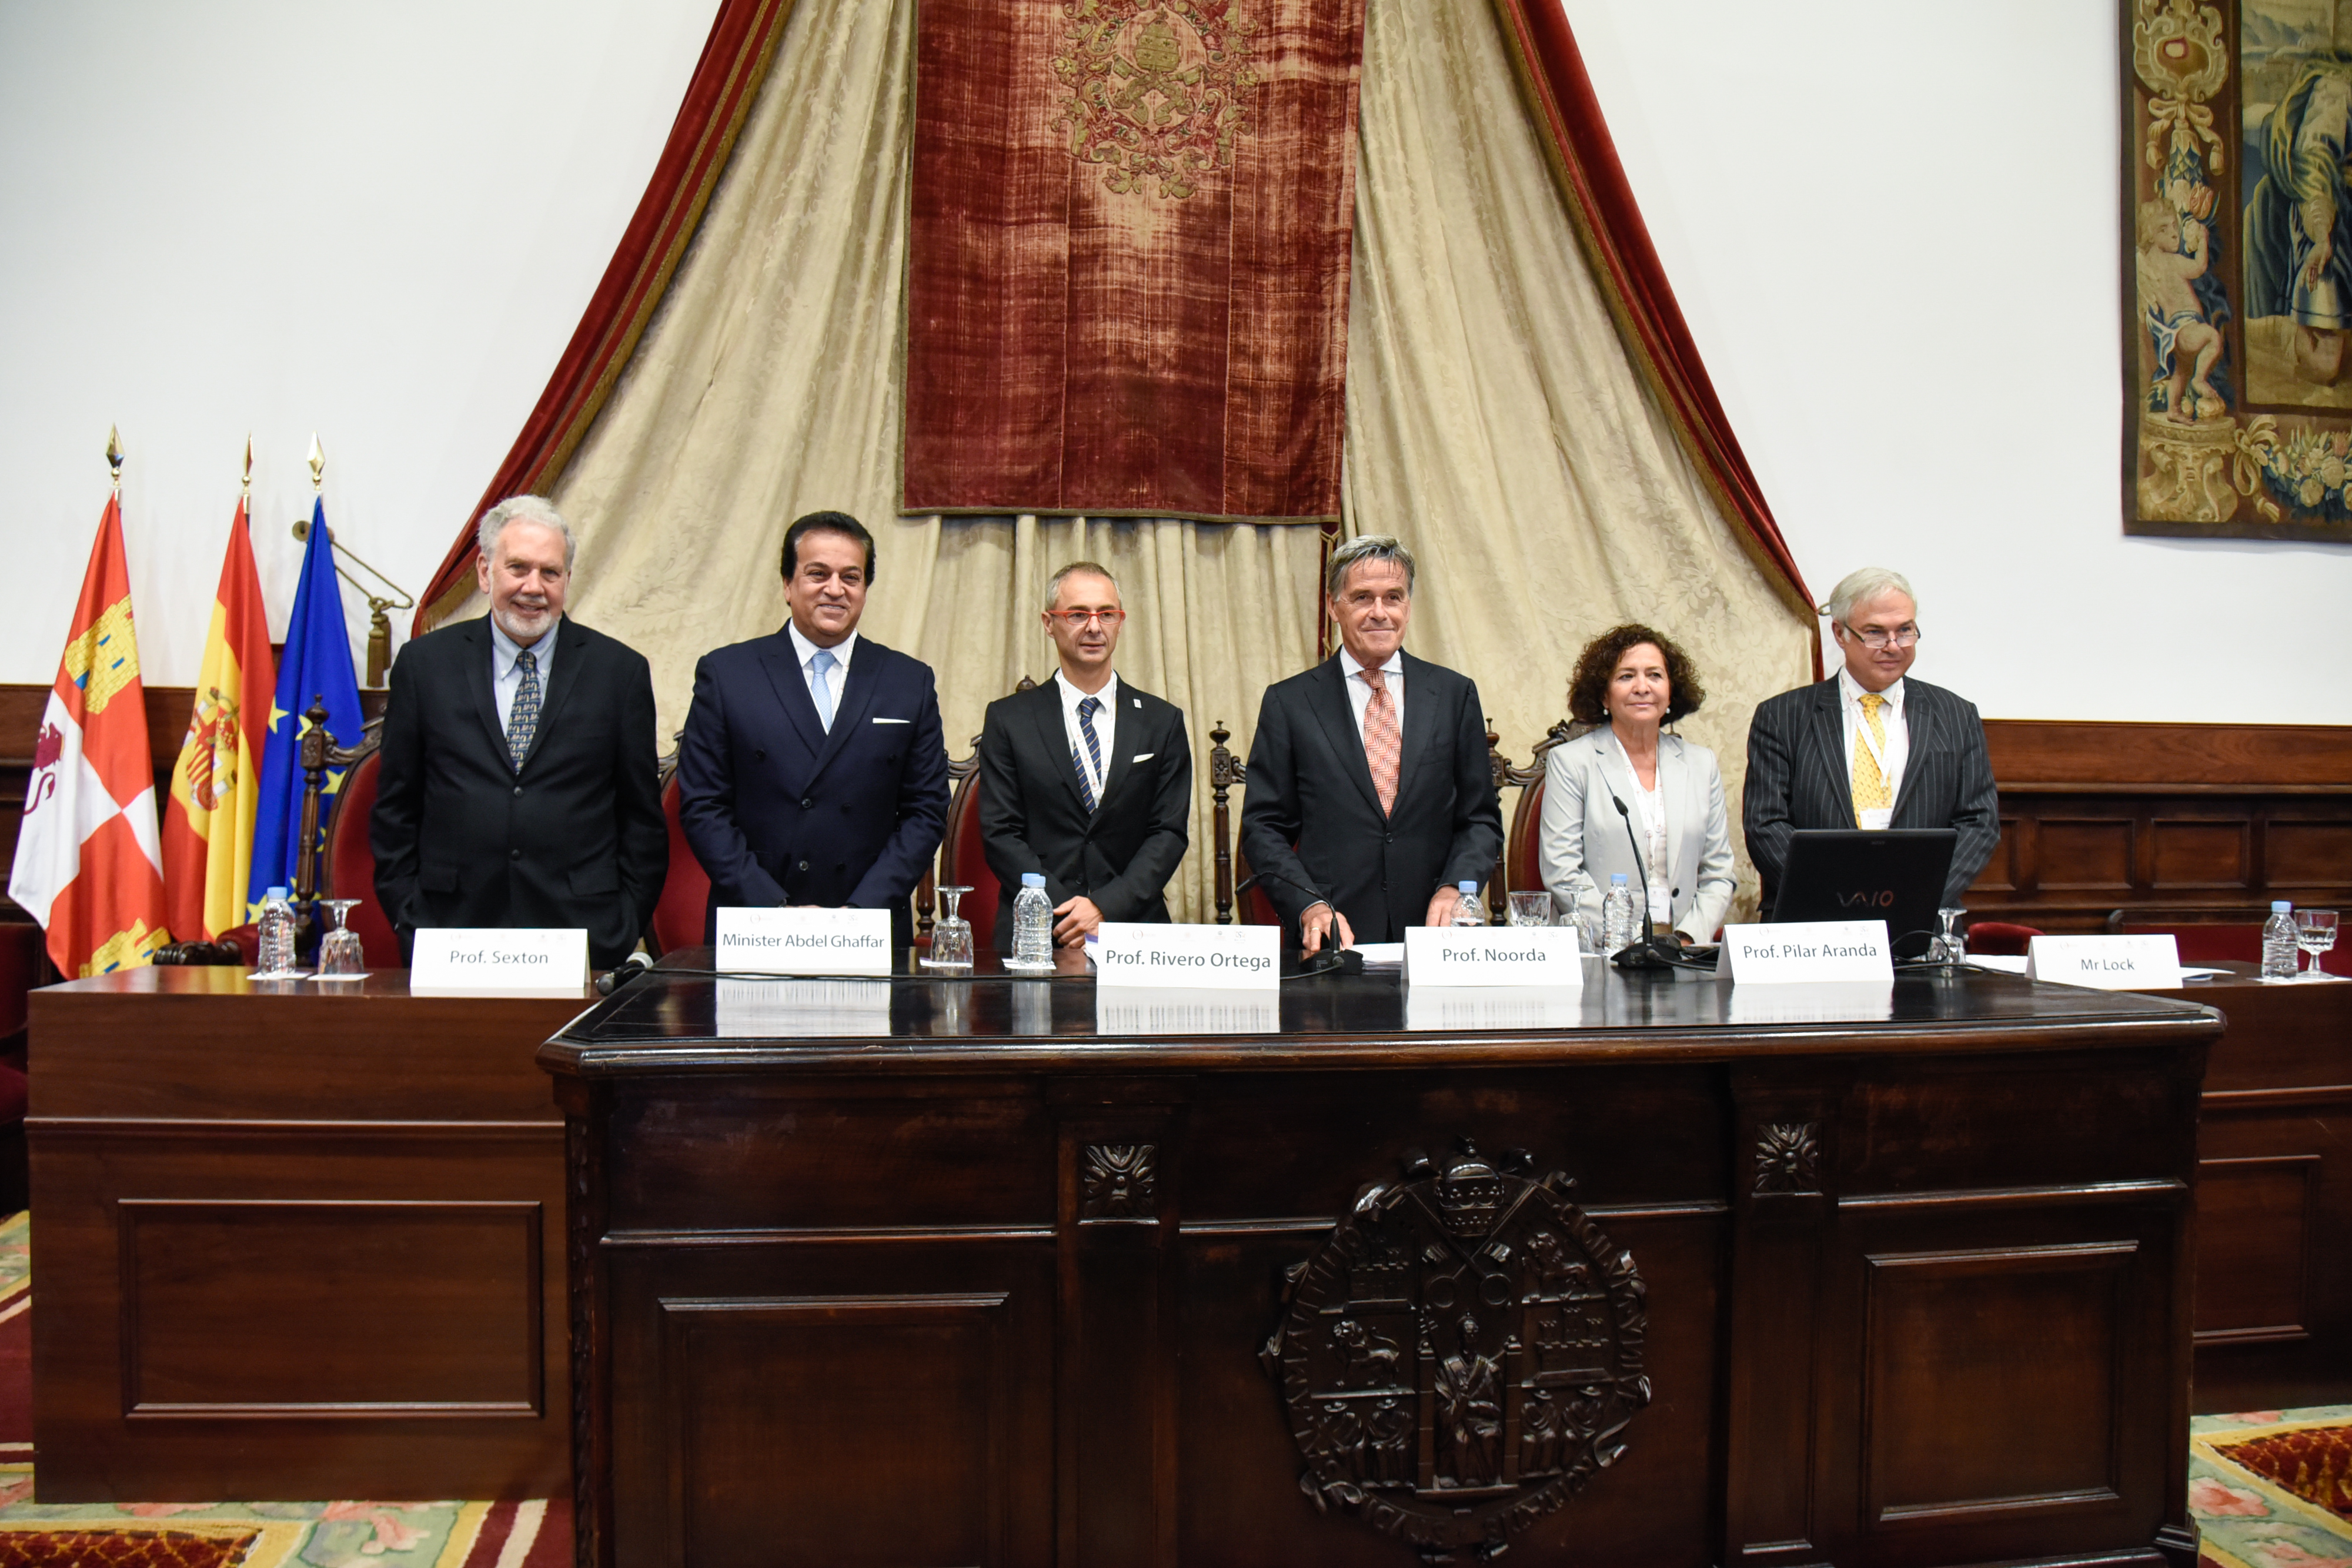 La Universidad de Salamanca acoge la XXX Asamblea de la Magna Charta Universitatum, la cuarta de las grandes reuniones institucionales del VIII Centenario